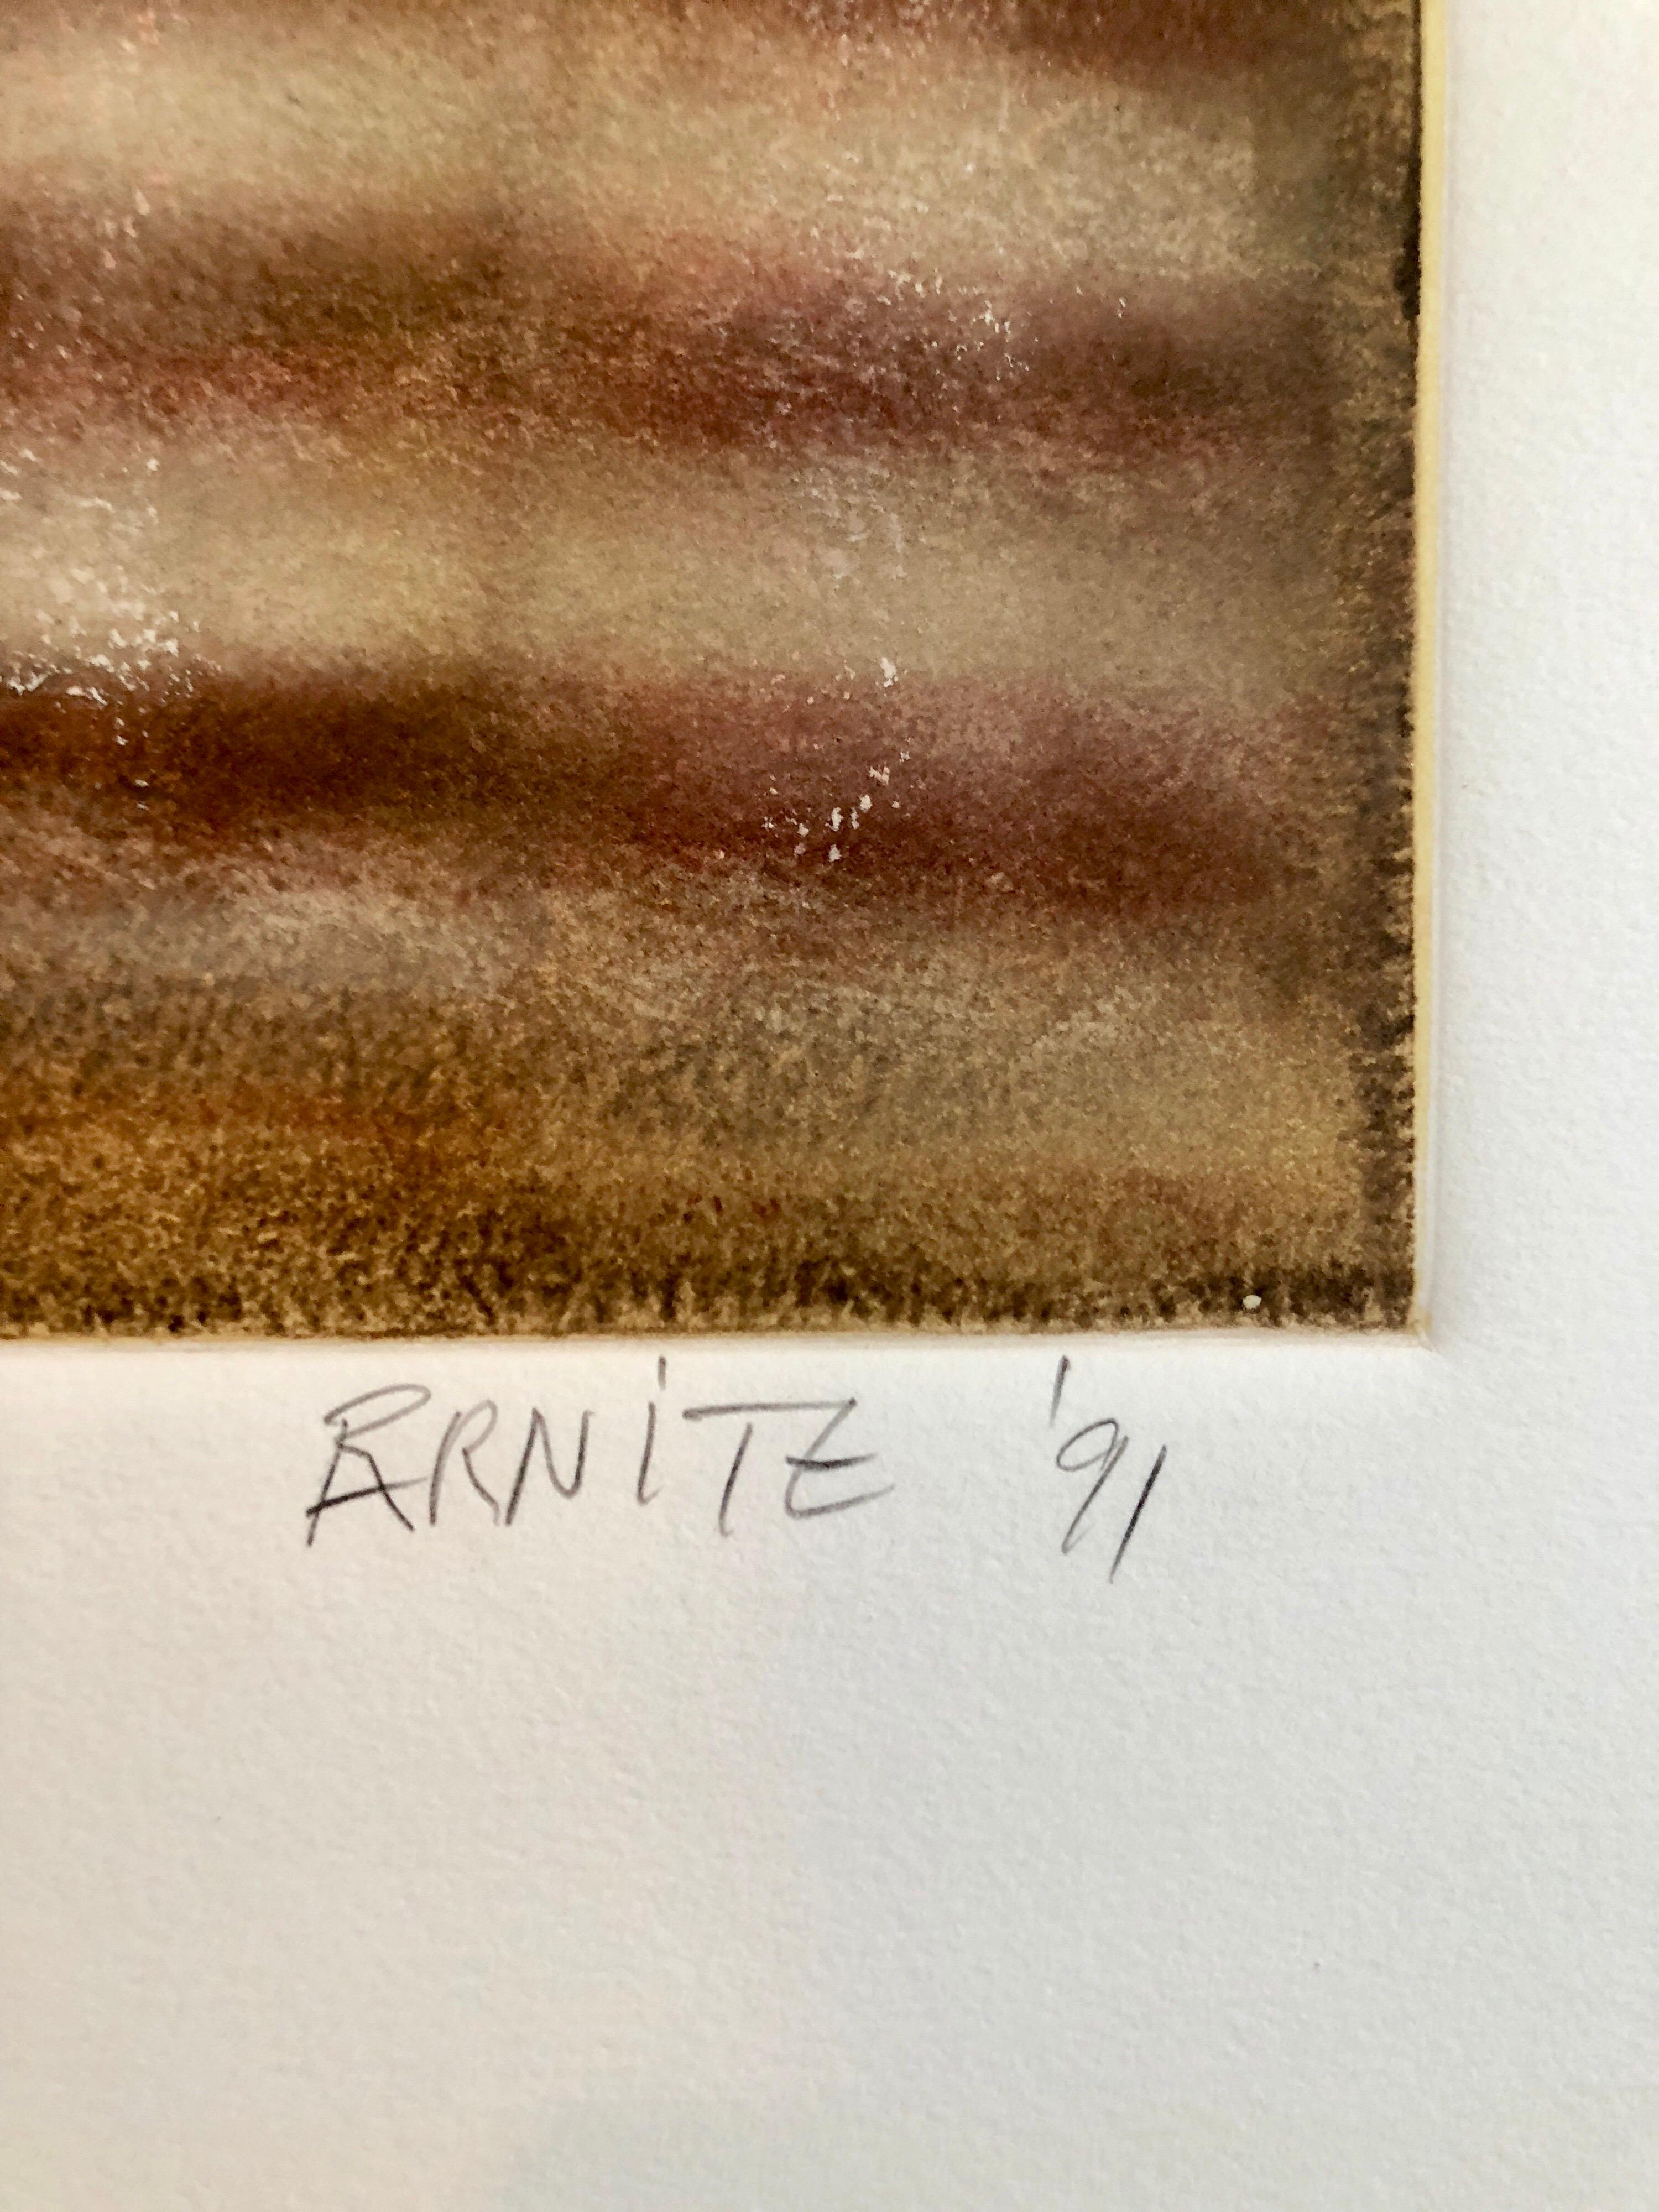 Geboren 1949, St. Louis, Missouri. Abstraktion mit Farbroller
Rick Arnitz' Werke wurden seit 1975 in der Bay Area ausgestellt, darunter eine Einzelausstellung im San Francisco Museum of Modern Art im Jahr 1989, und sind in zahlreichen privaten und